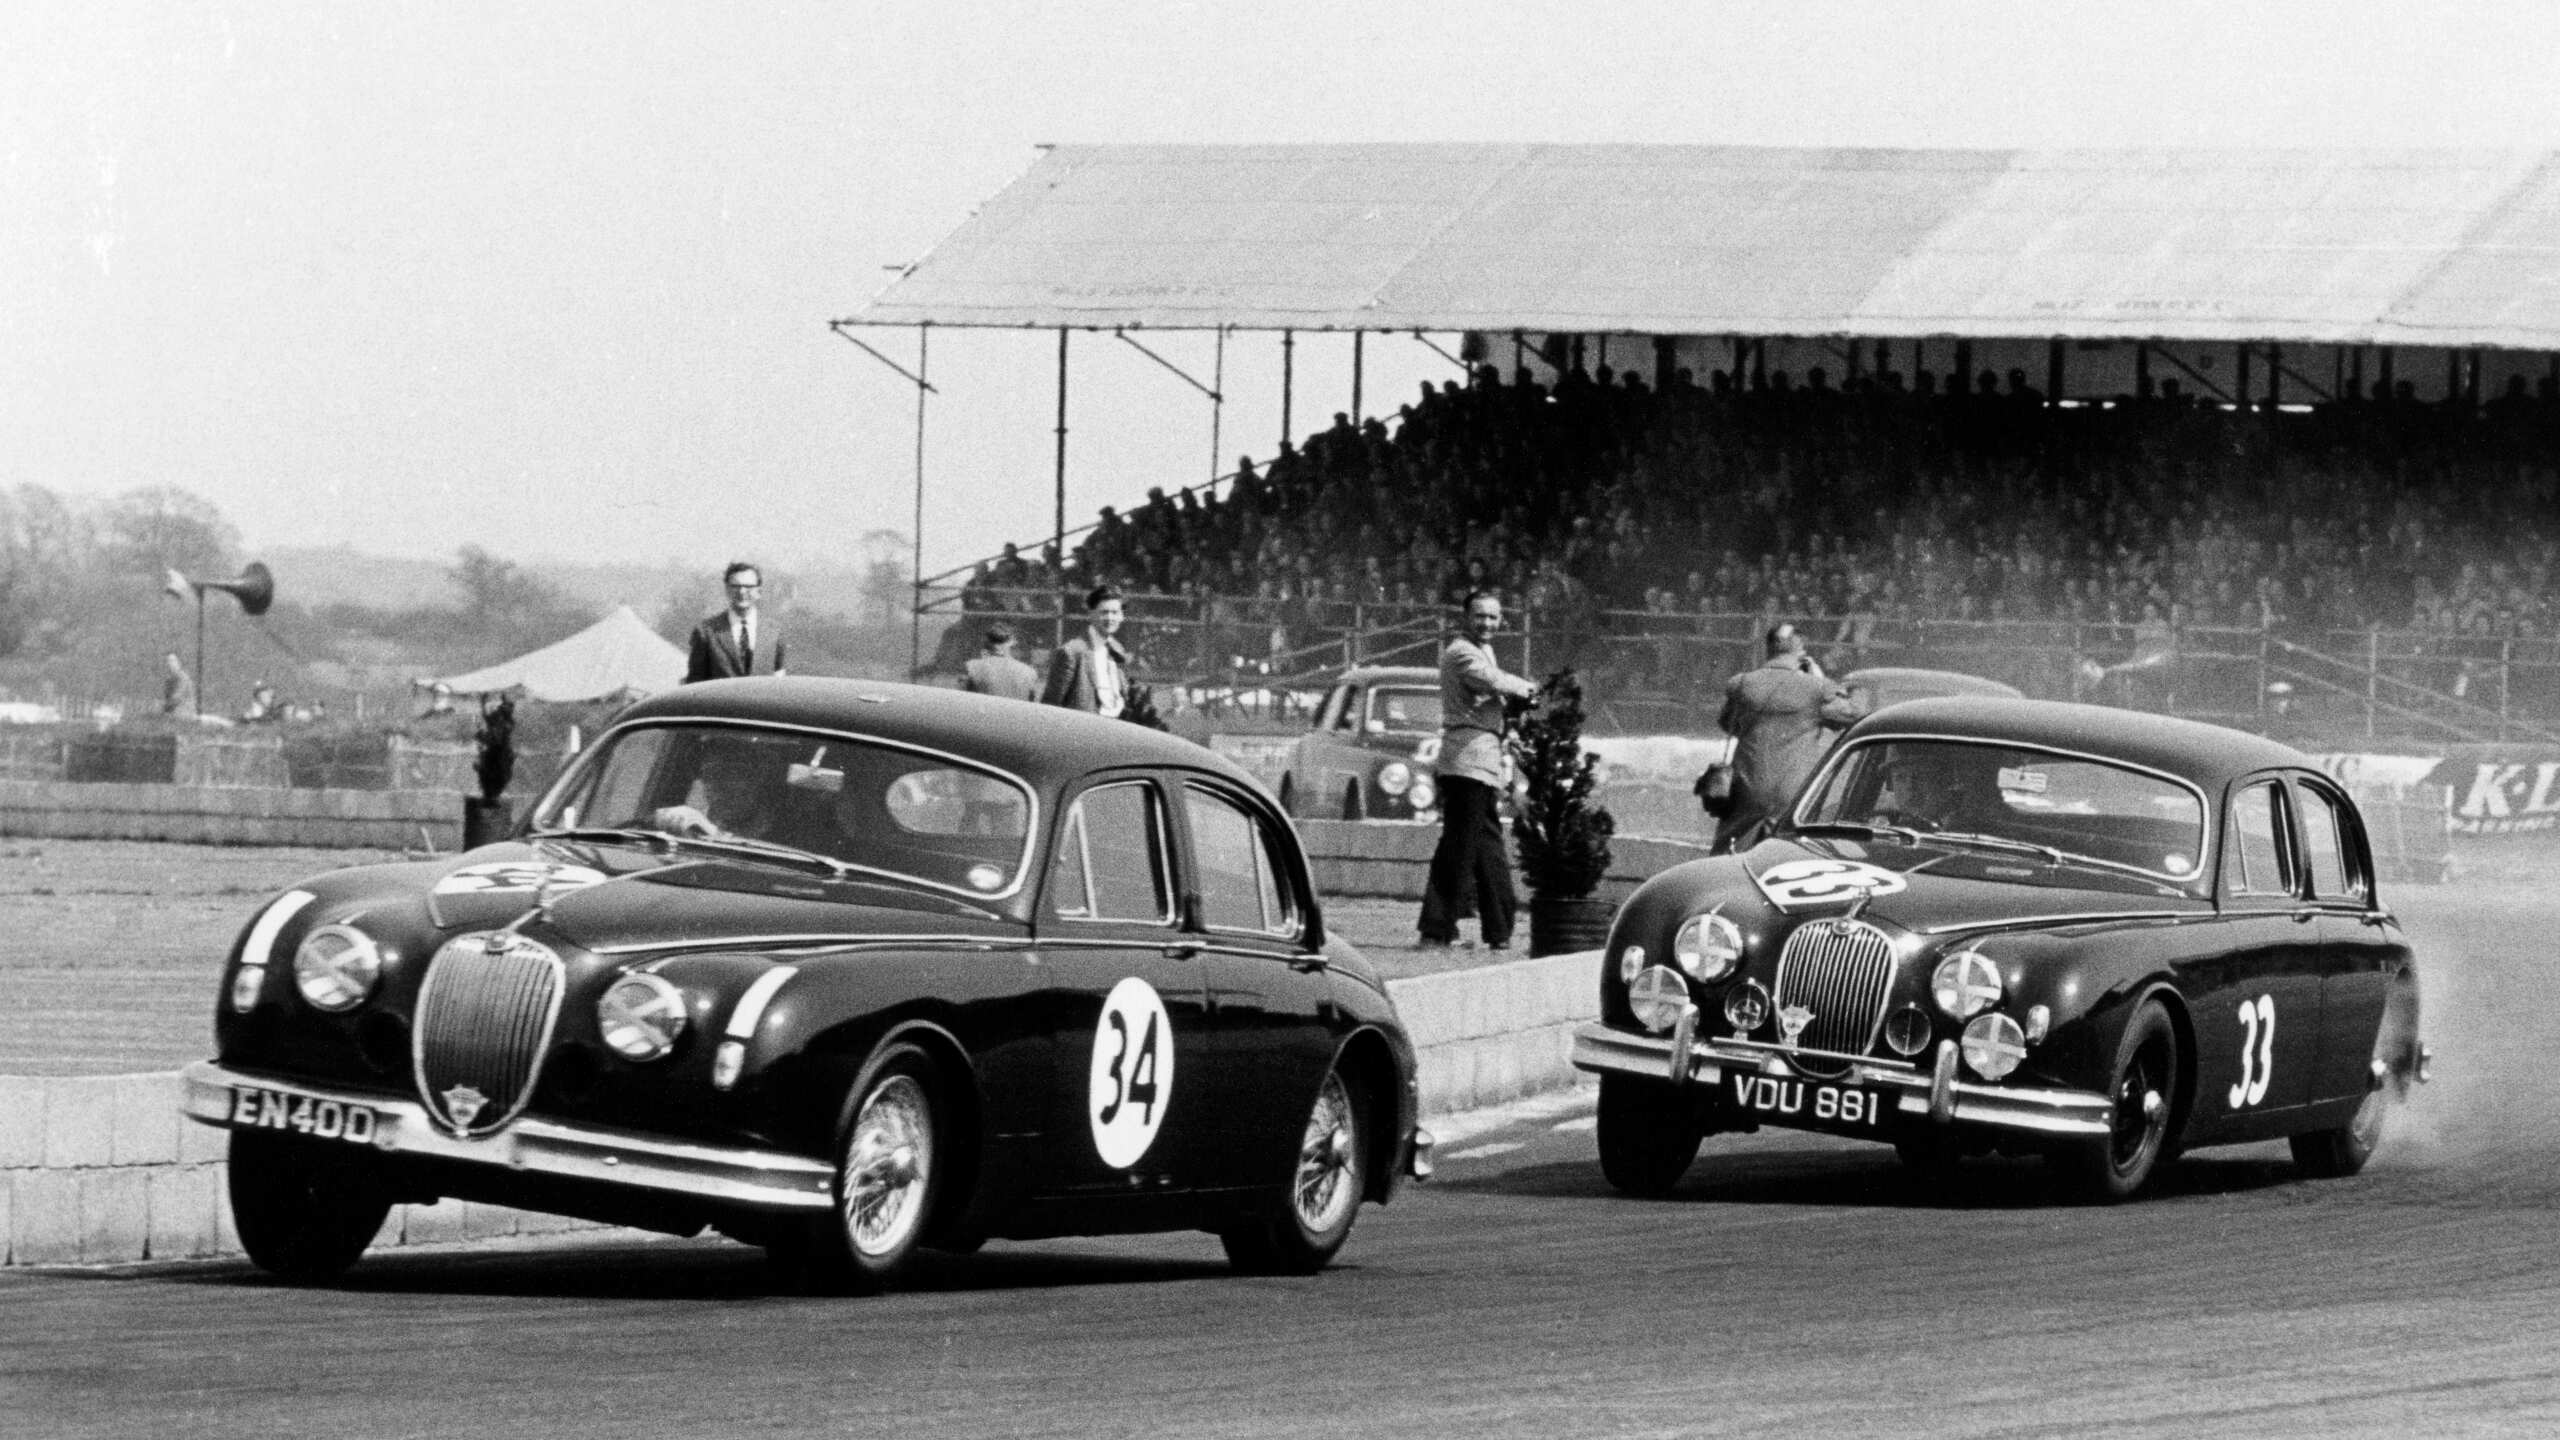 1958 Jaguar Silverstone MK1 